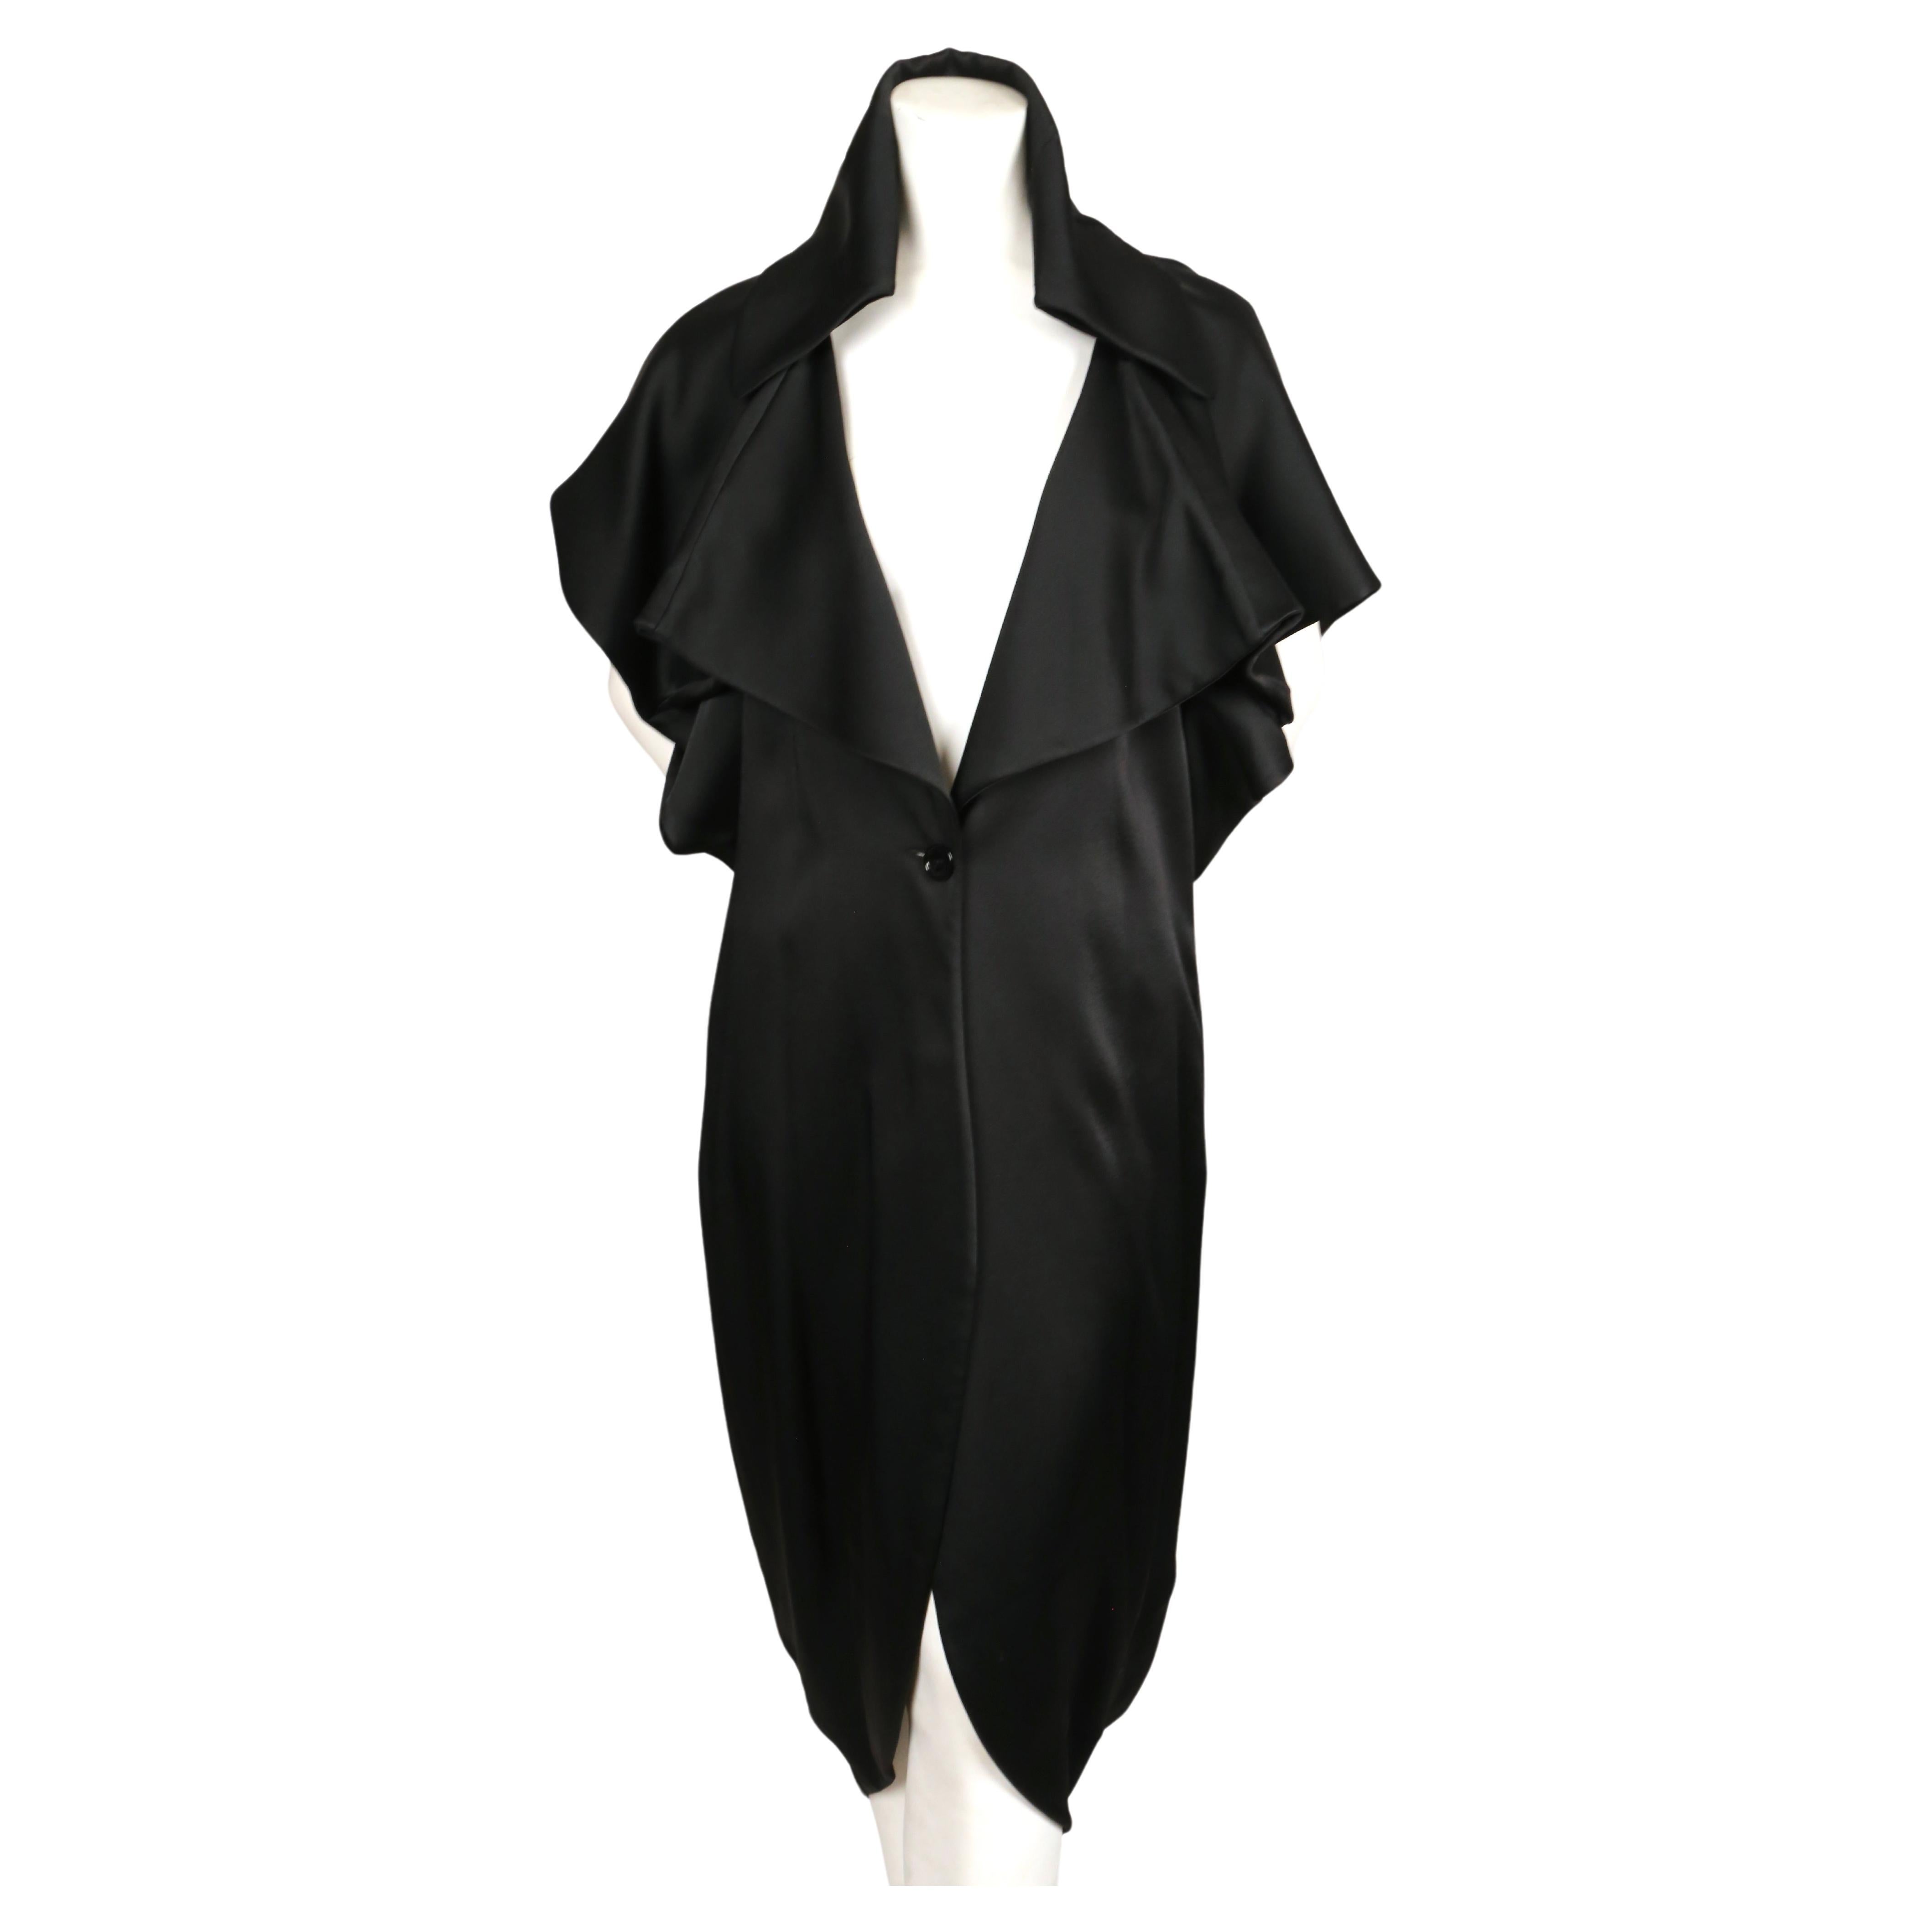 Manteau de soirée drapé noir de jais, conçu par John Galliano et datant du début des années 2000. Labellisé taille 42. Convient à de nombreuses tailles grâce à sa coupe surdimensionnée et drapée. Mesures approximatives : buste entièrement déployé